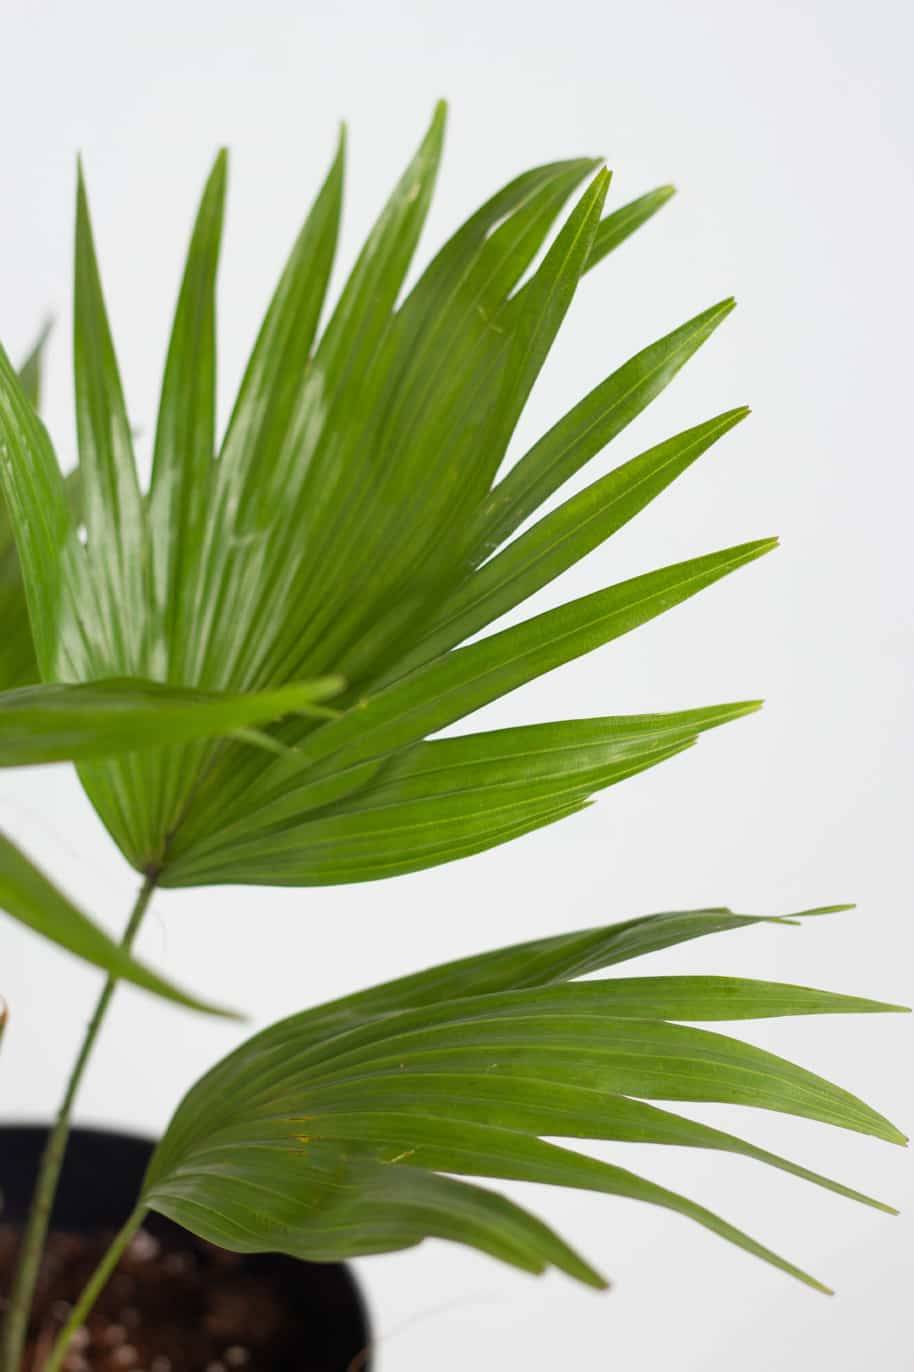 Livistona Palm